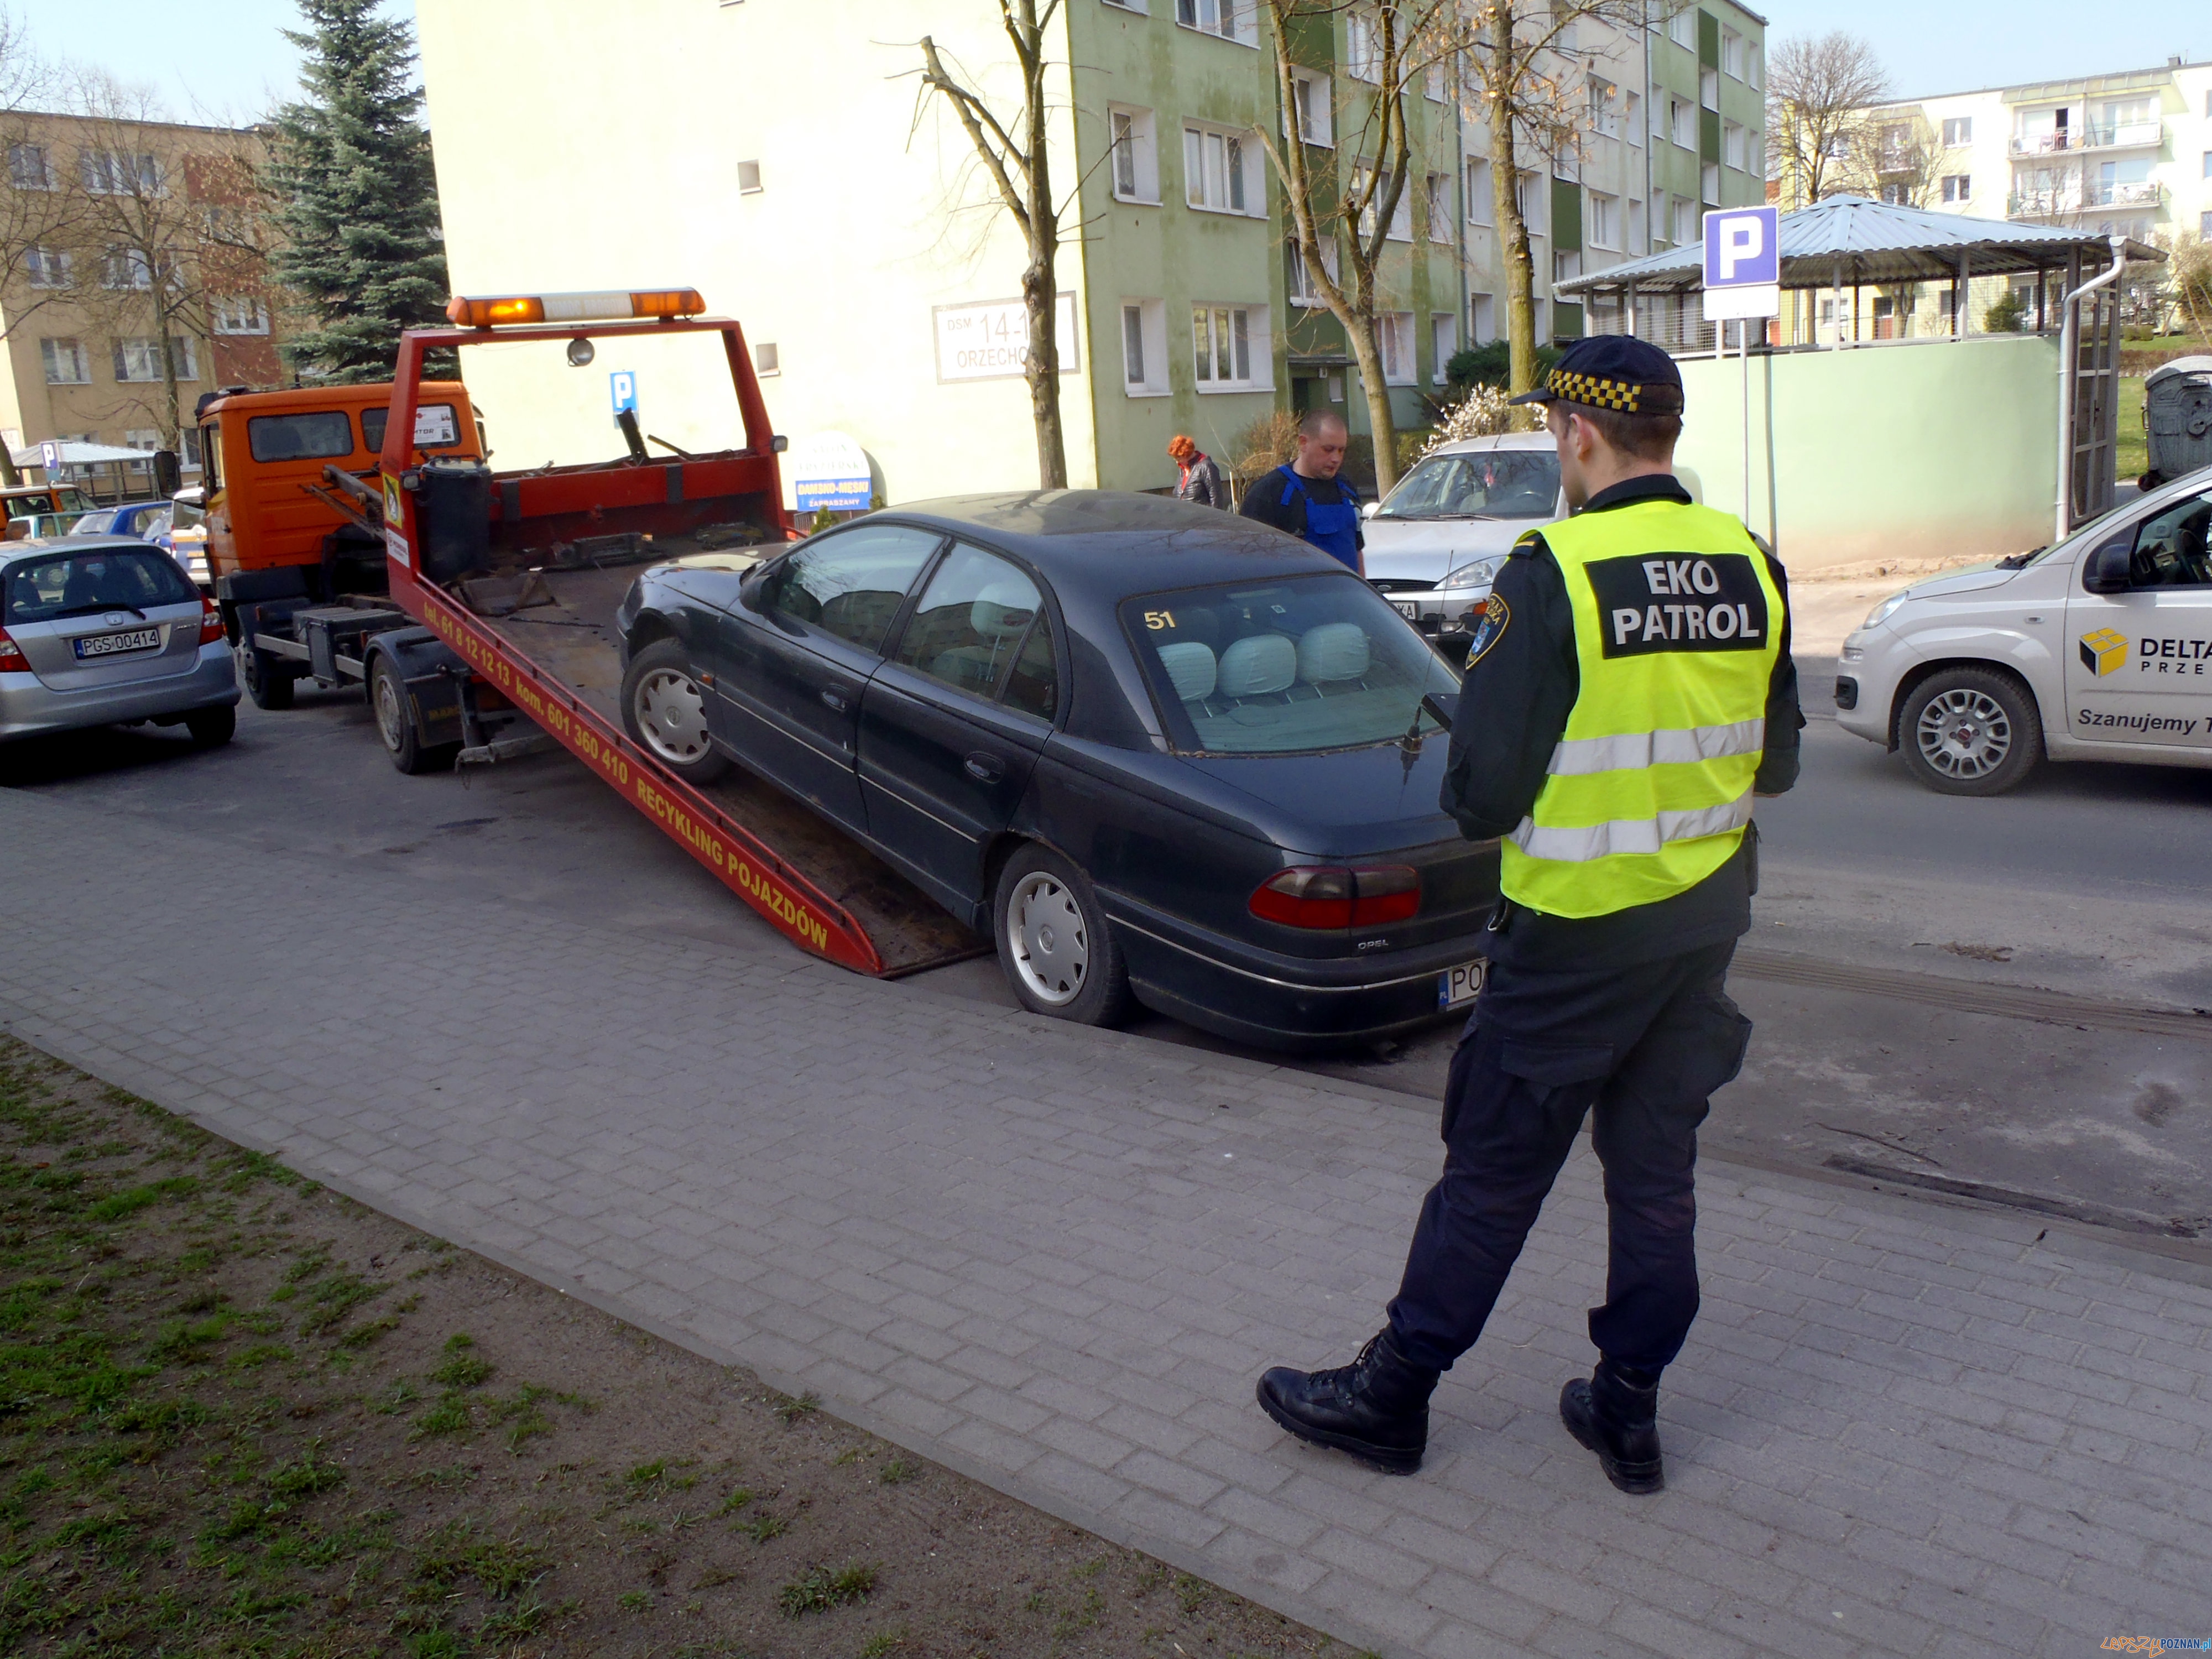 Wraki mają zniknąć z ulic i parkingów  Foto: Straż Miejska w Poznaniu